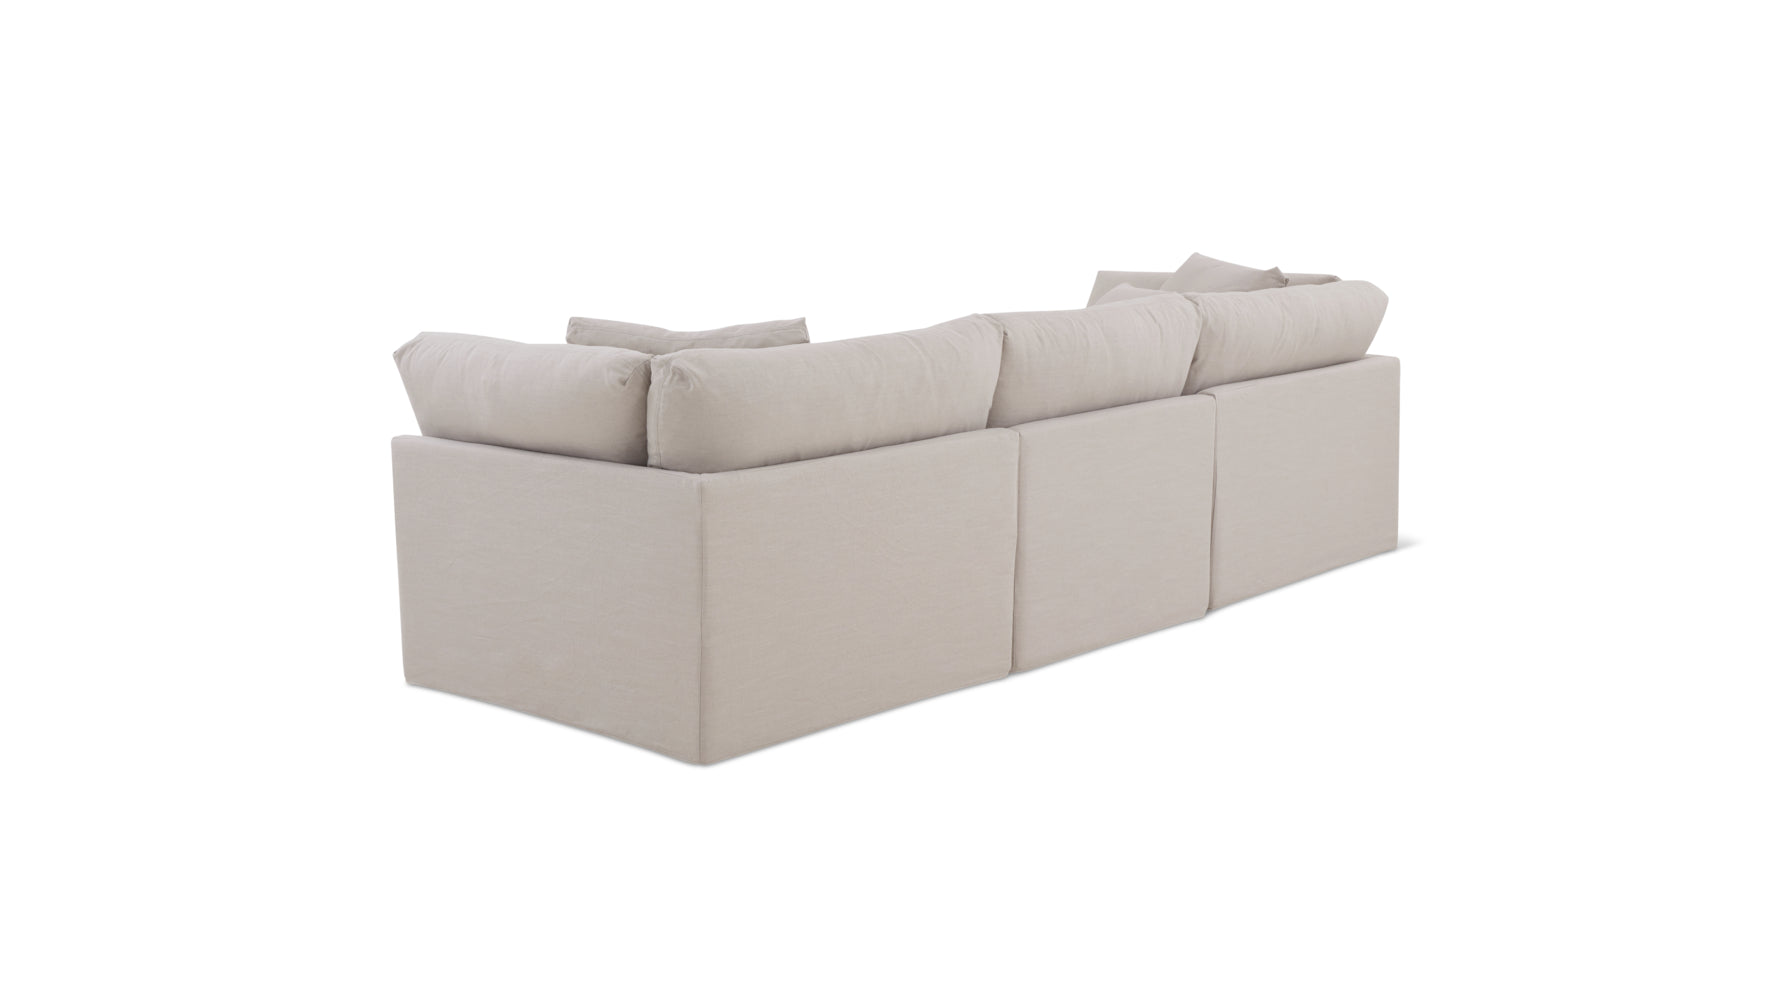 Get Together™ 3-Piece Modular Sofa, Large, Clay - Image 11